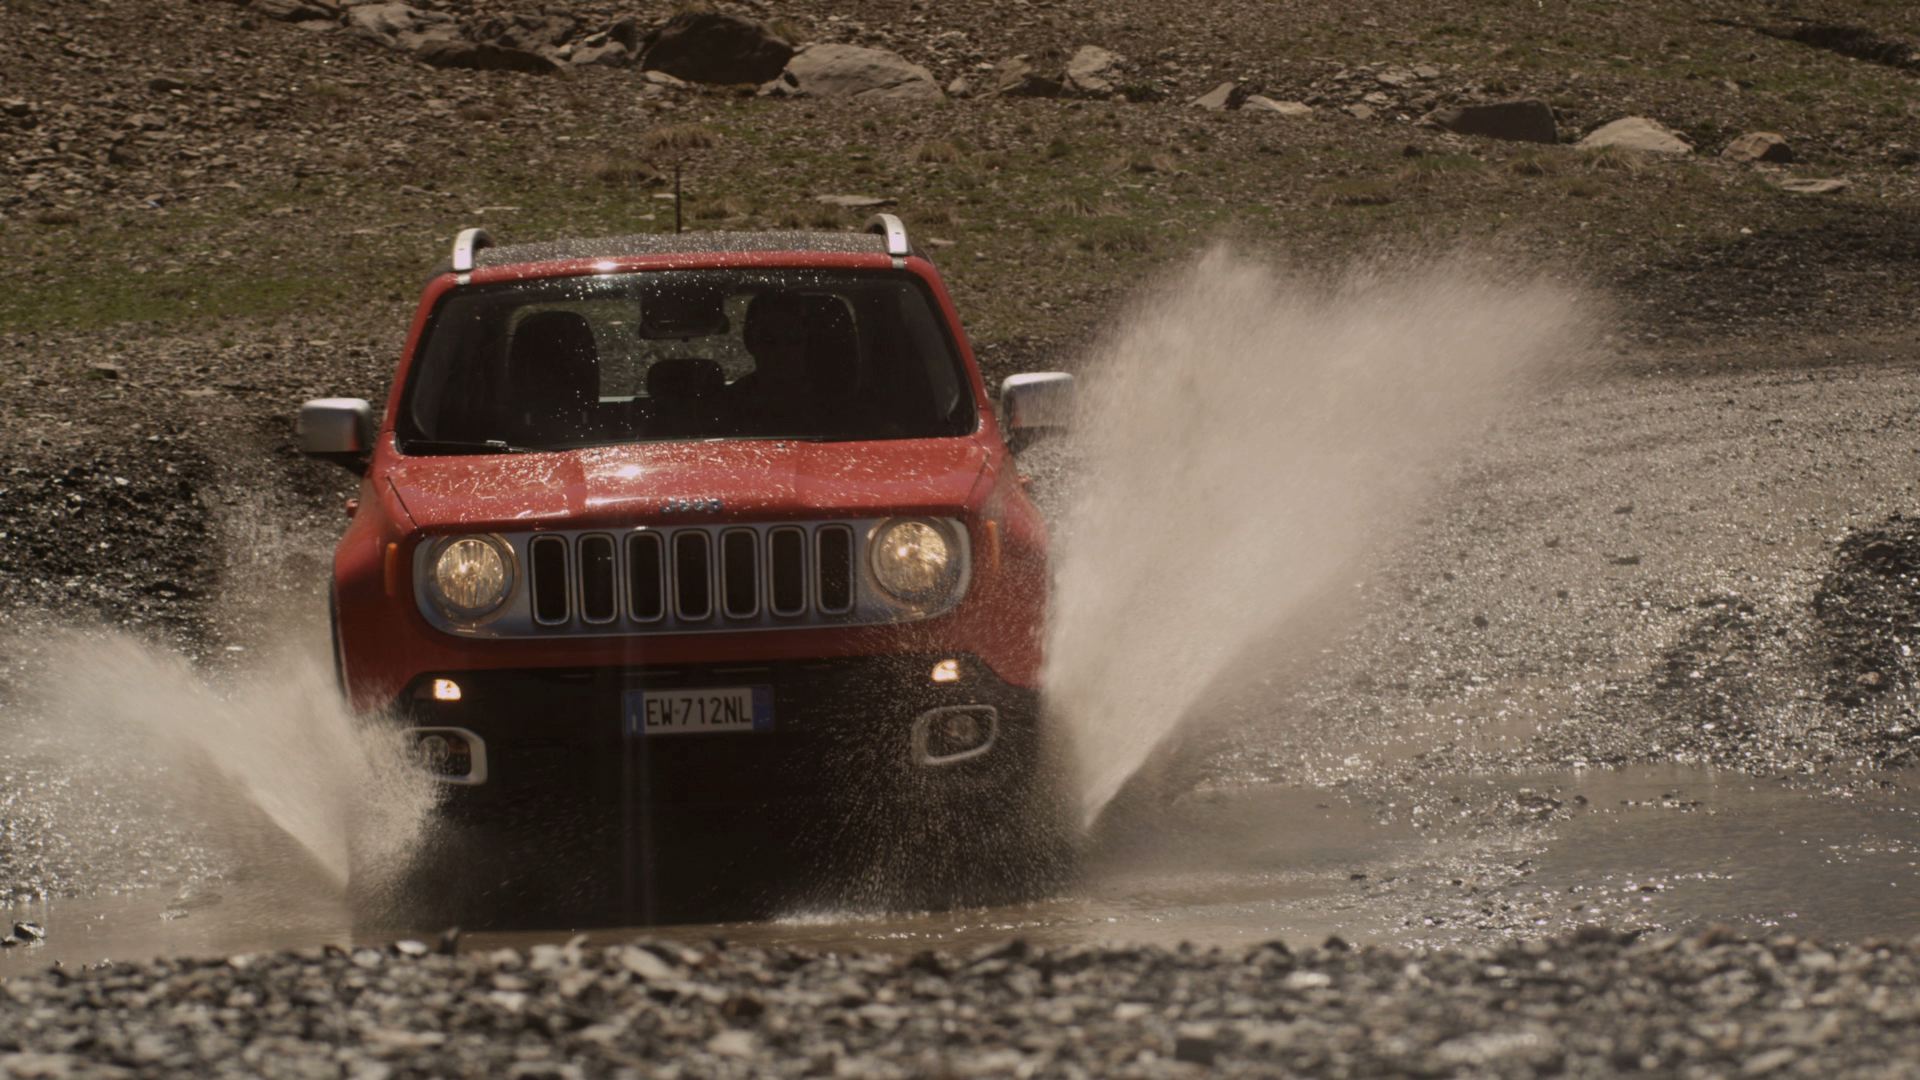  Jeep Renegade partecipa al The North Face Kalymnos Climbing Festival 2014